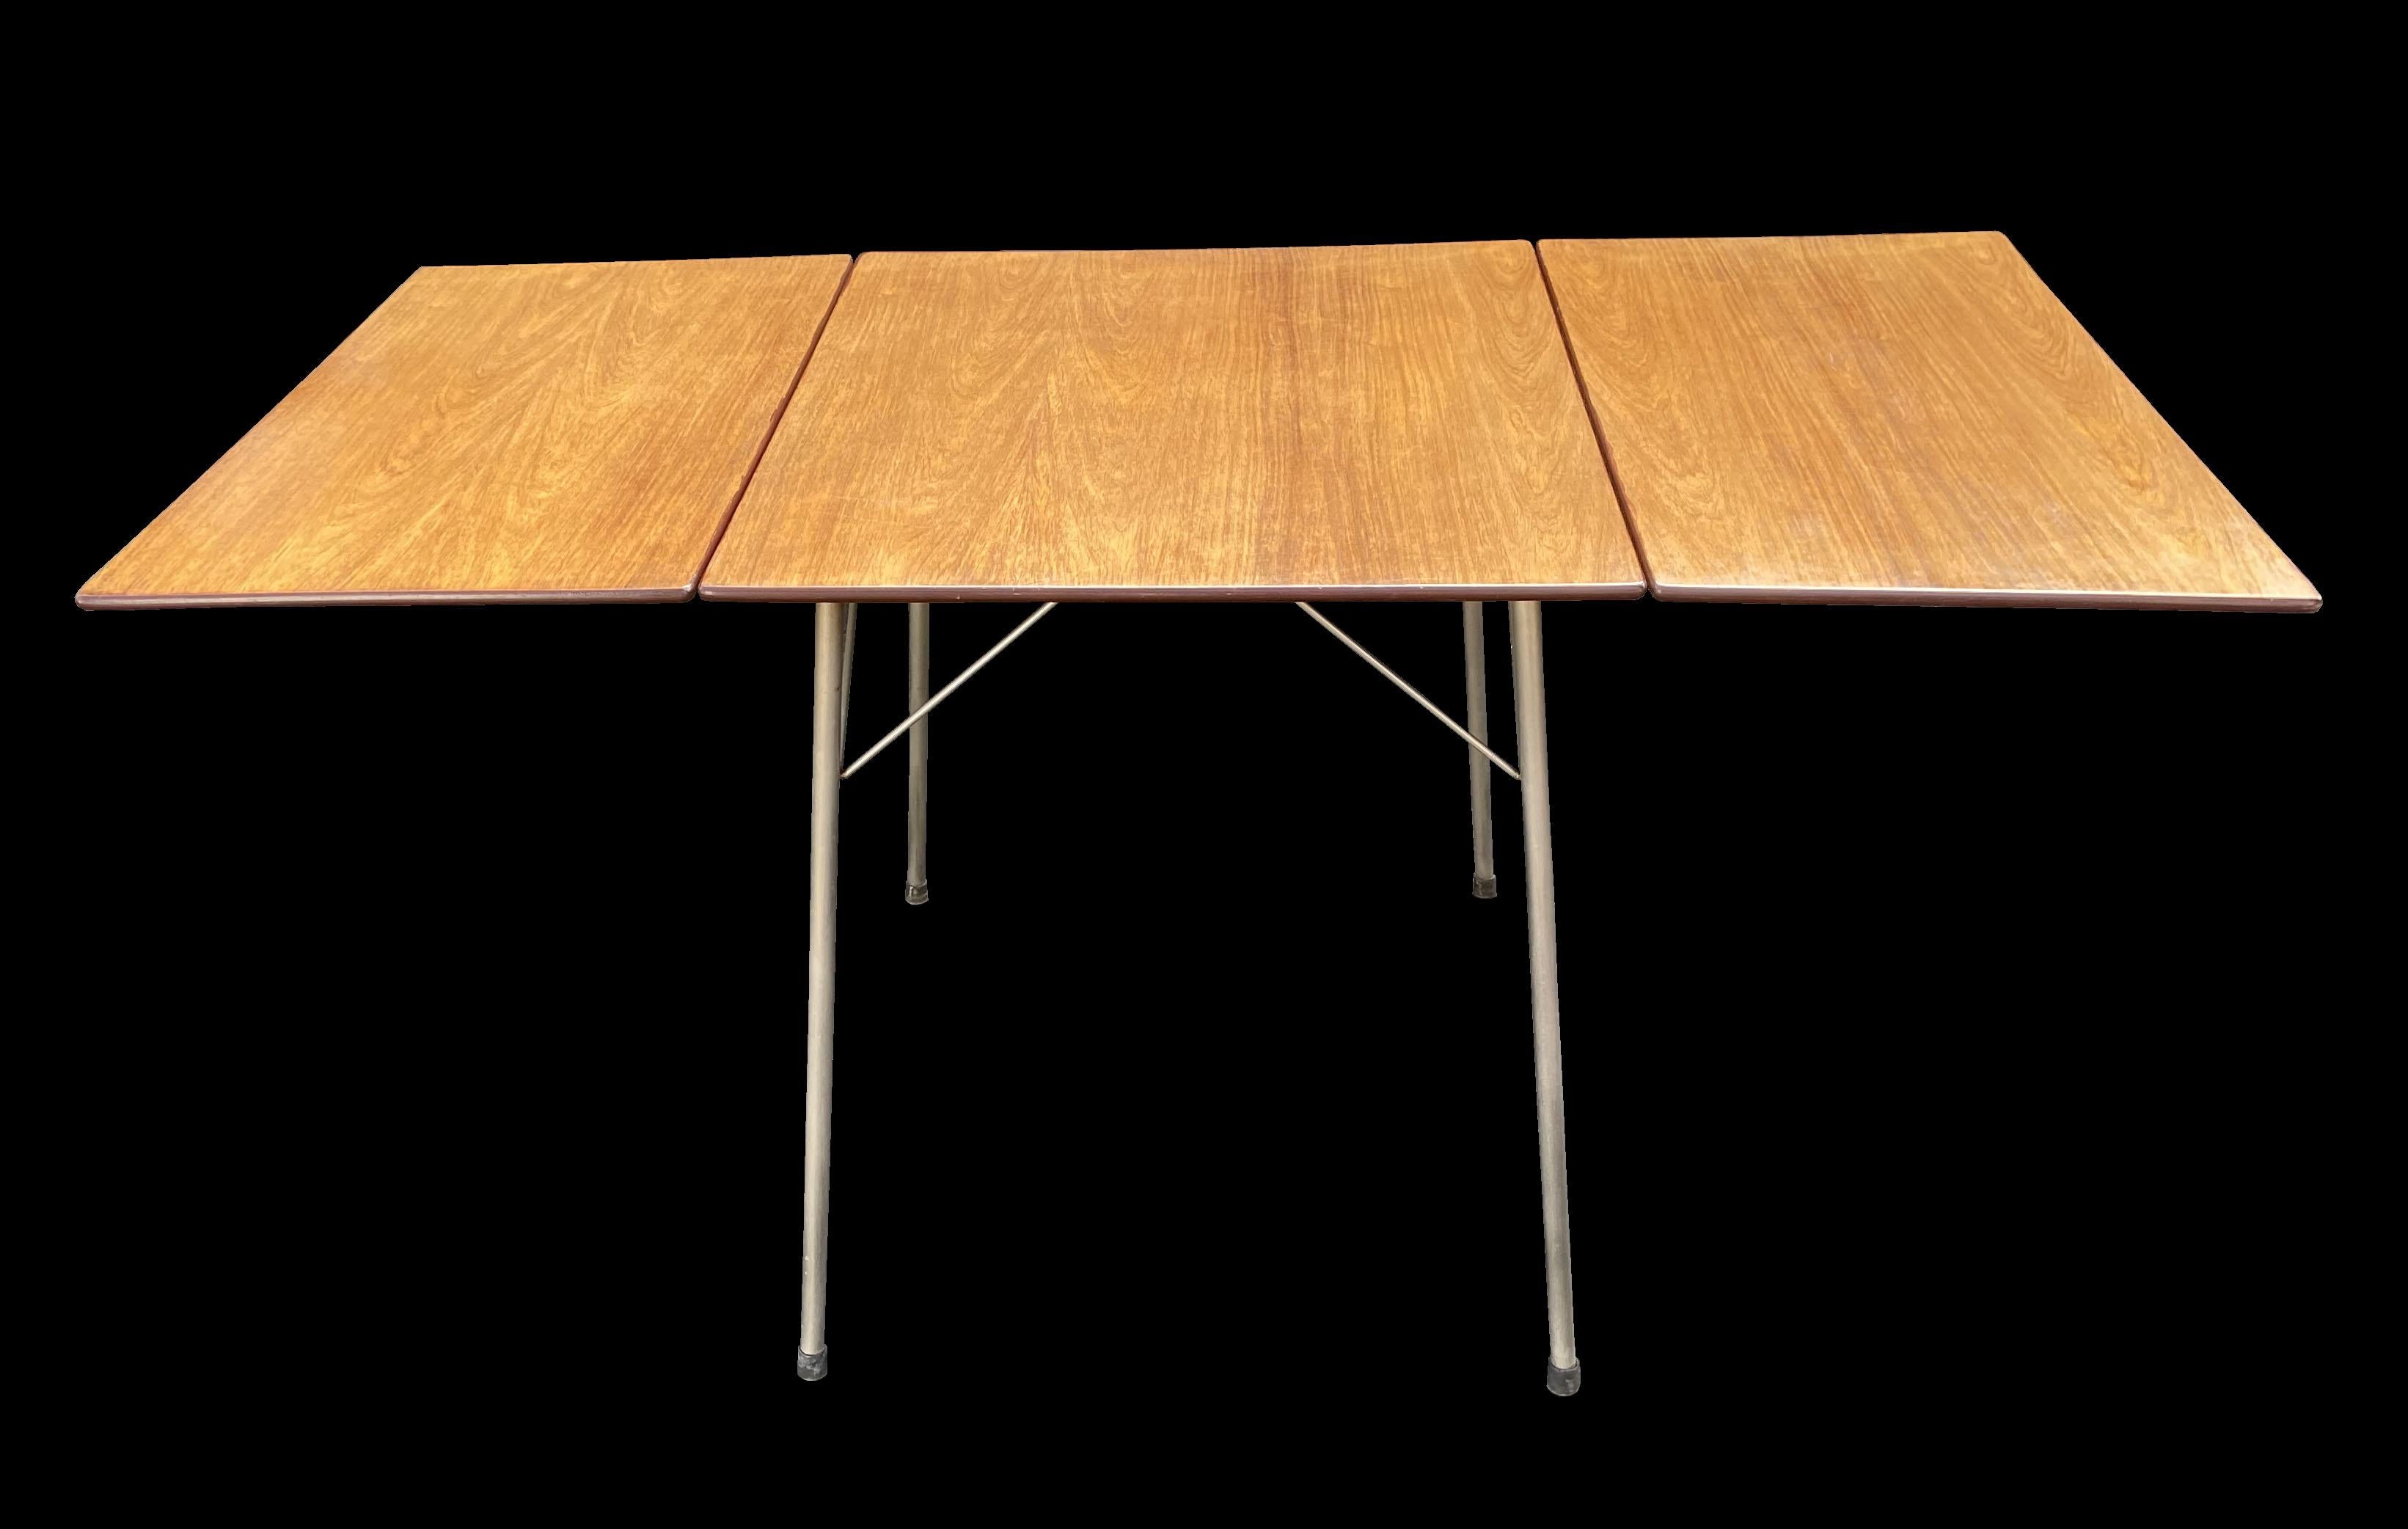 Scandinavian Modern 'Ant' Table Model 3601 by Arne Jacobsen for Fritz Hansen For Sale